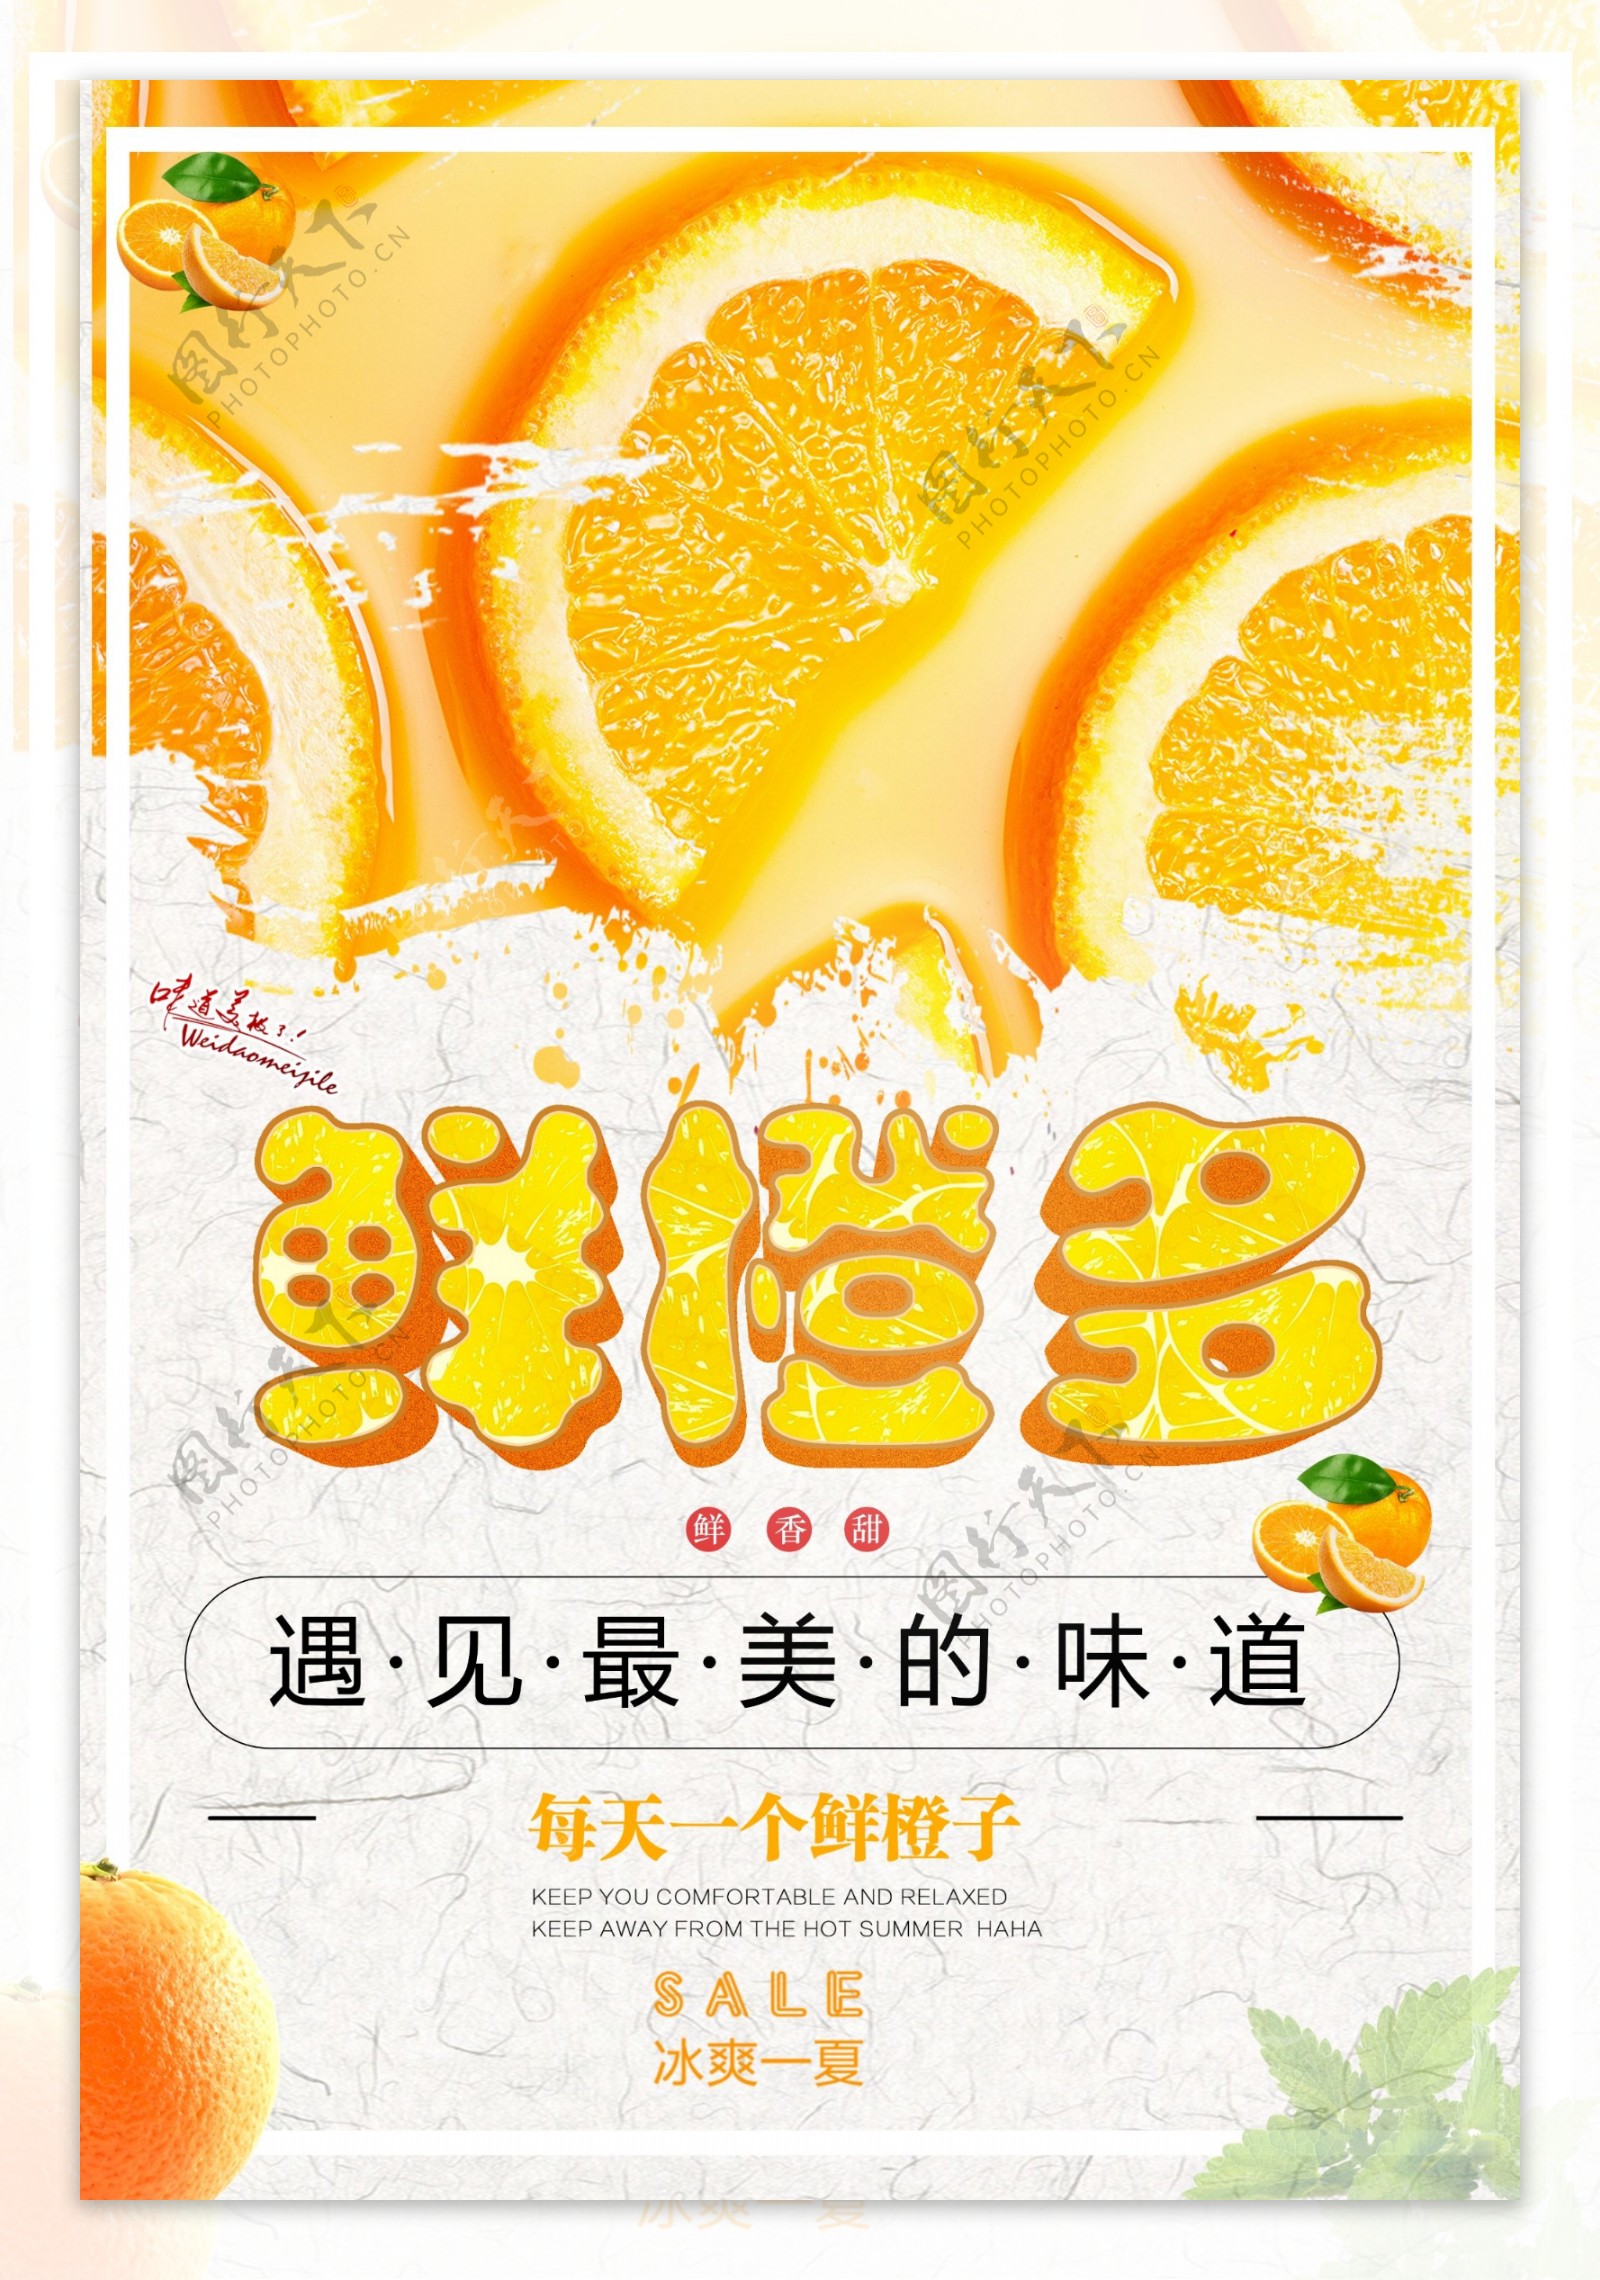 2018橙色活力水果橙子促销海报免费模板